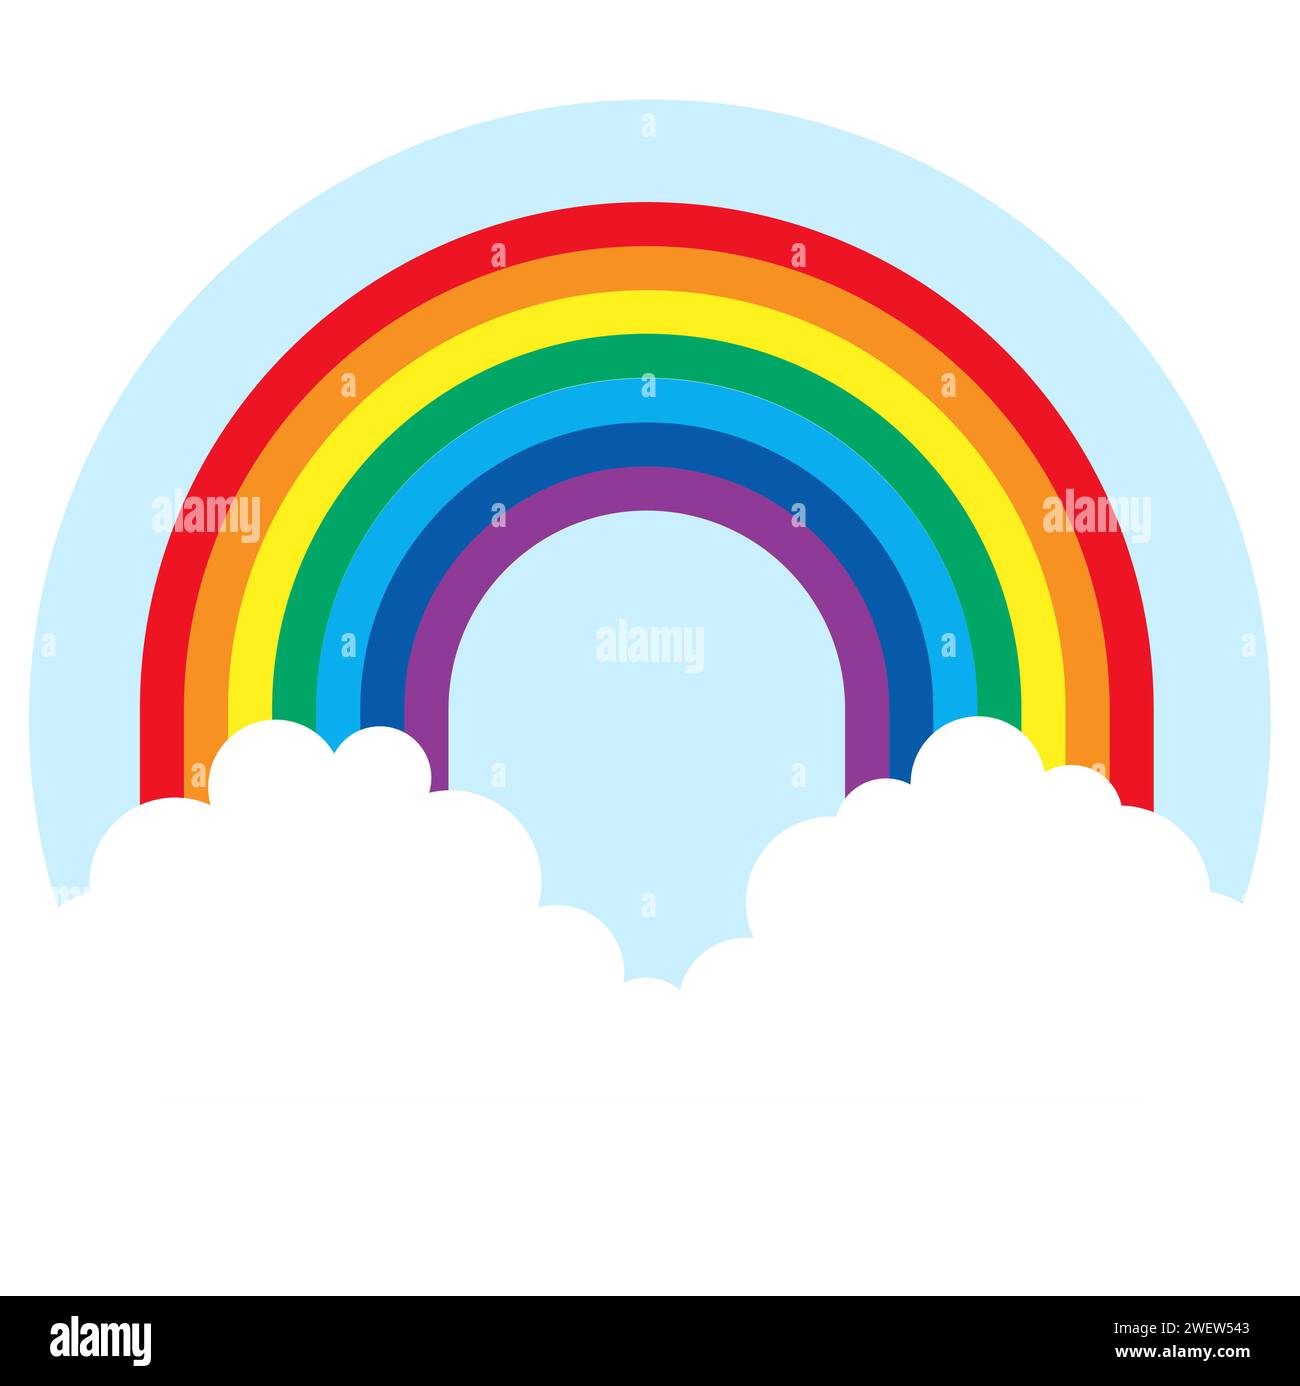 illustrazione vettoriale eps che illustra un meraviglioso arcobaleno colorato con nuvole bianche alle estremità Illustrazione Vettoriale